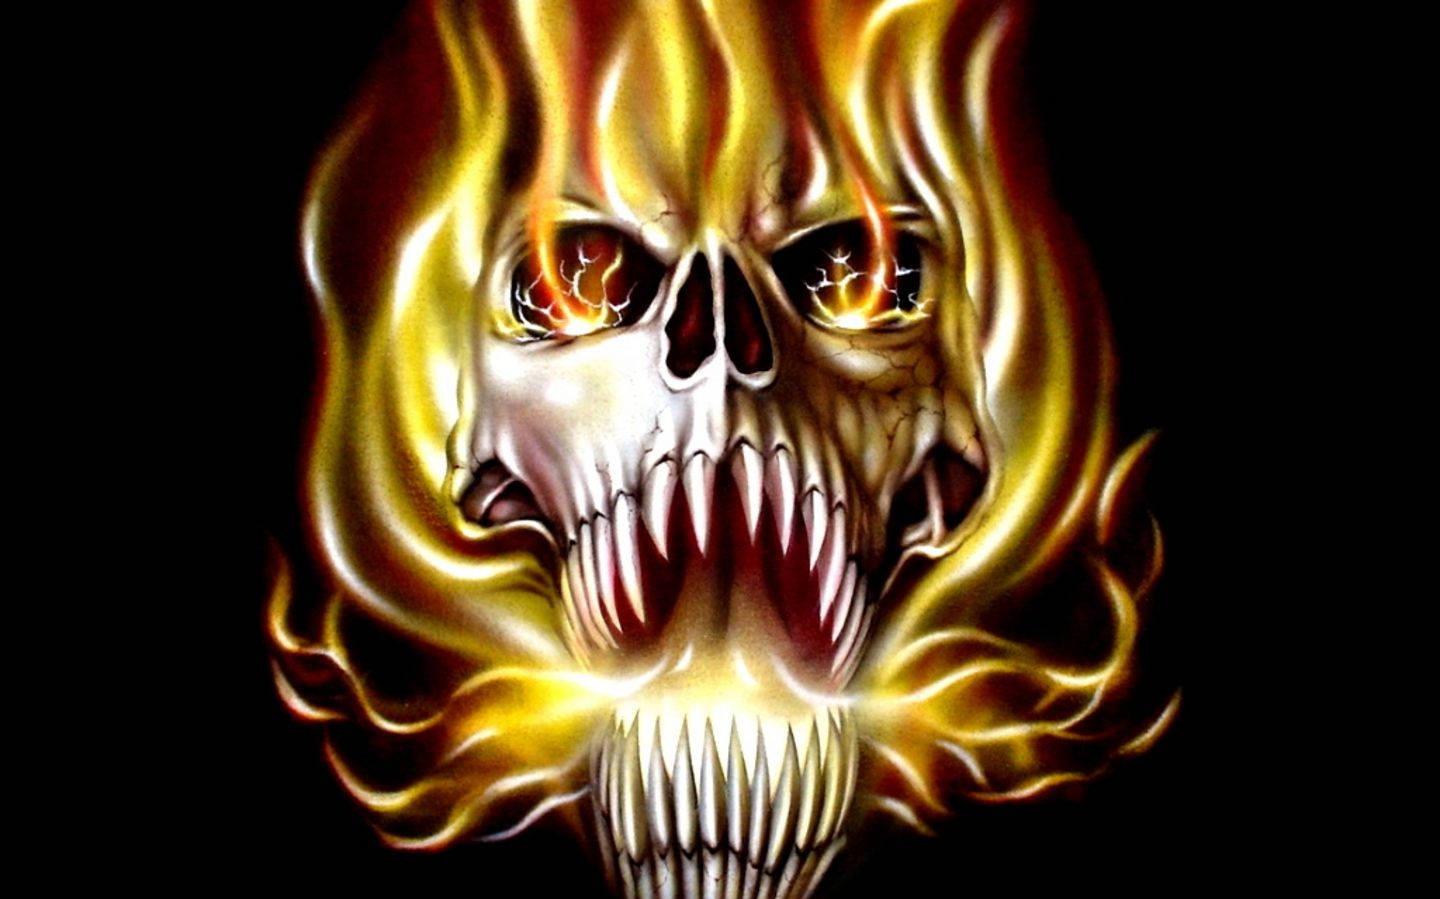 Flaming Skull Monster Wallpaper